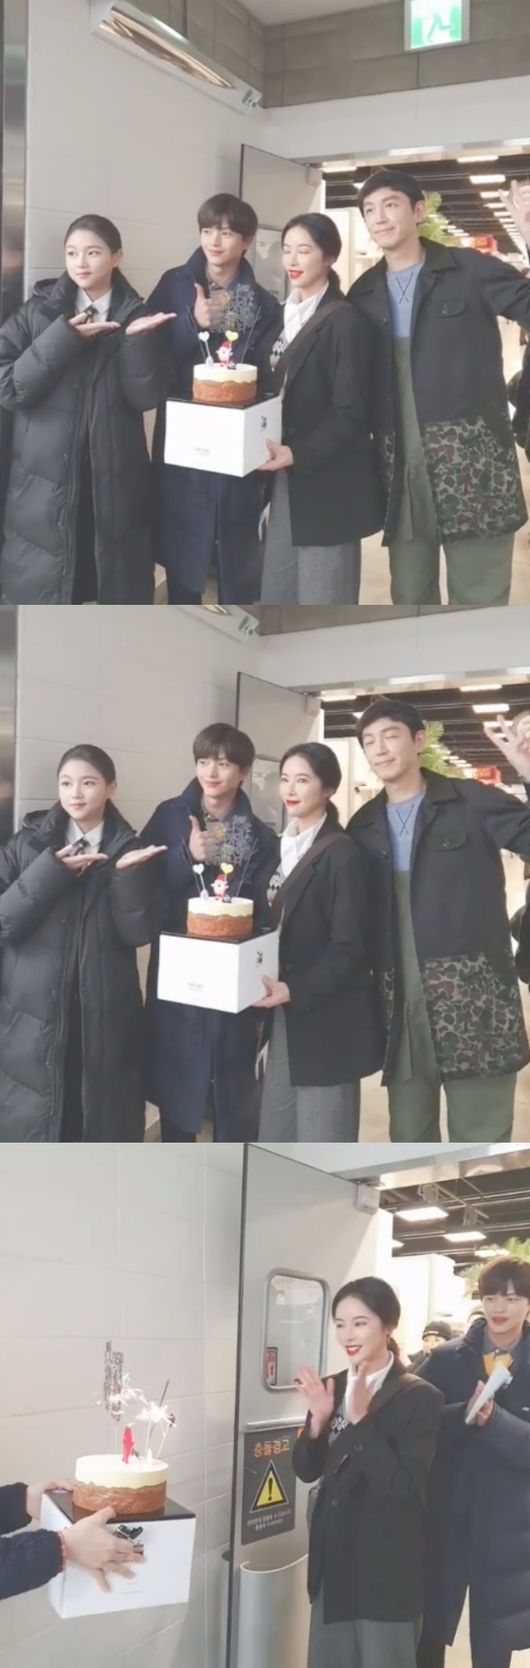 [사진=황정음 SNS] 배우 황정음이 '쌍갑포차' 팀에게 생일 축하 받은 현장 영상을 공개했다.